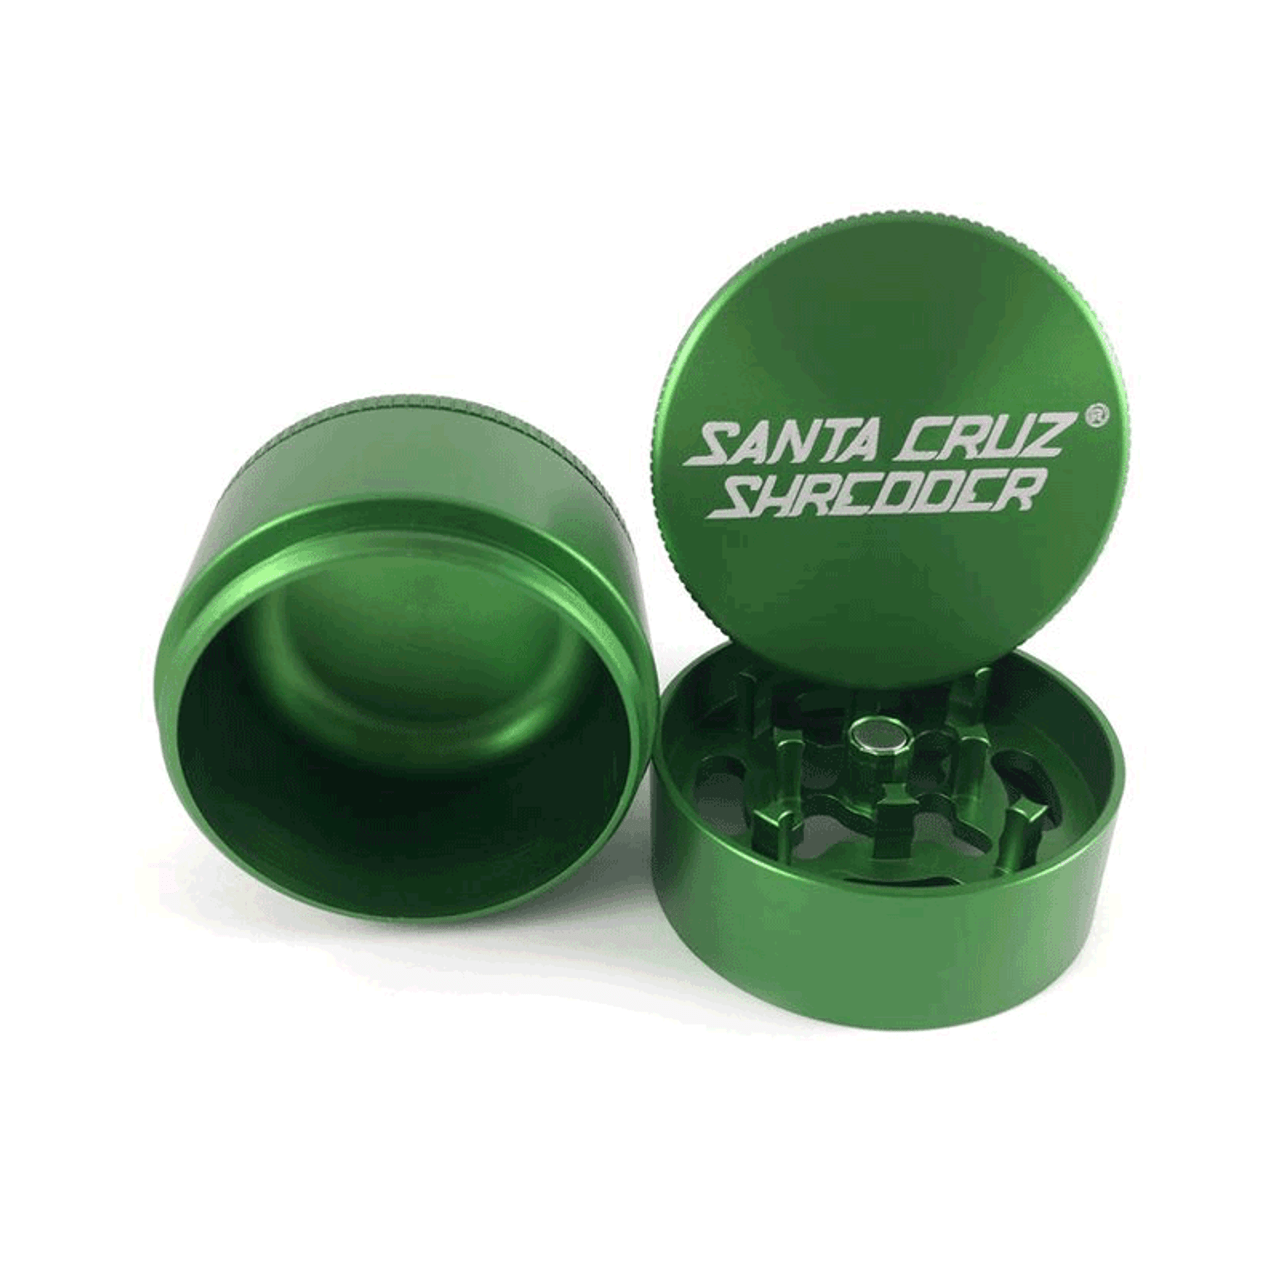 Santa Cruz Shredder - 3 Piece Grinder - 1 5/8" Small - Grey